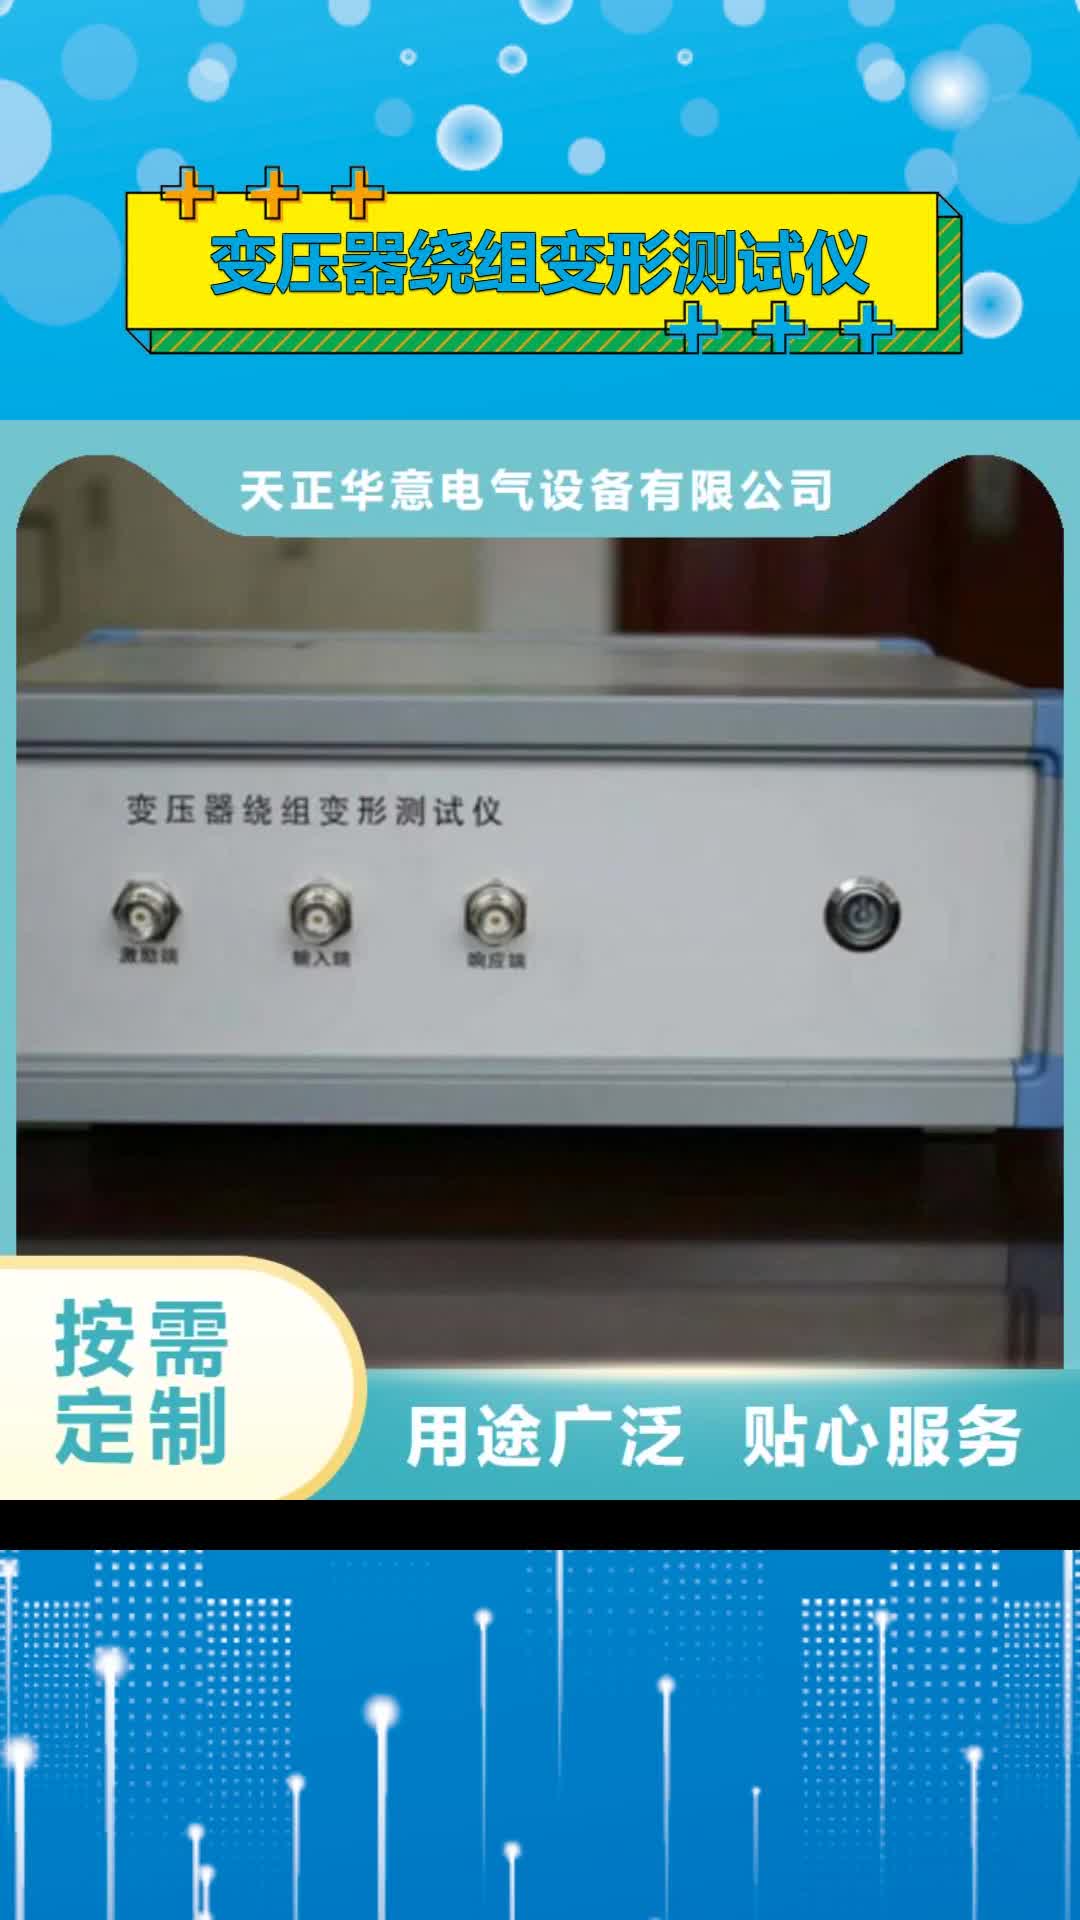 台湾【变压器绕组变形测试仪】 变频串联谐振耐压试验装置严格把控质量